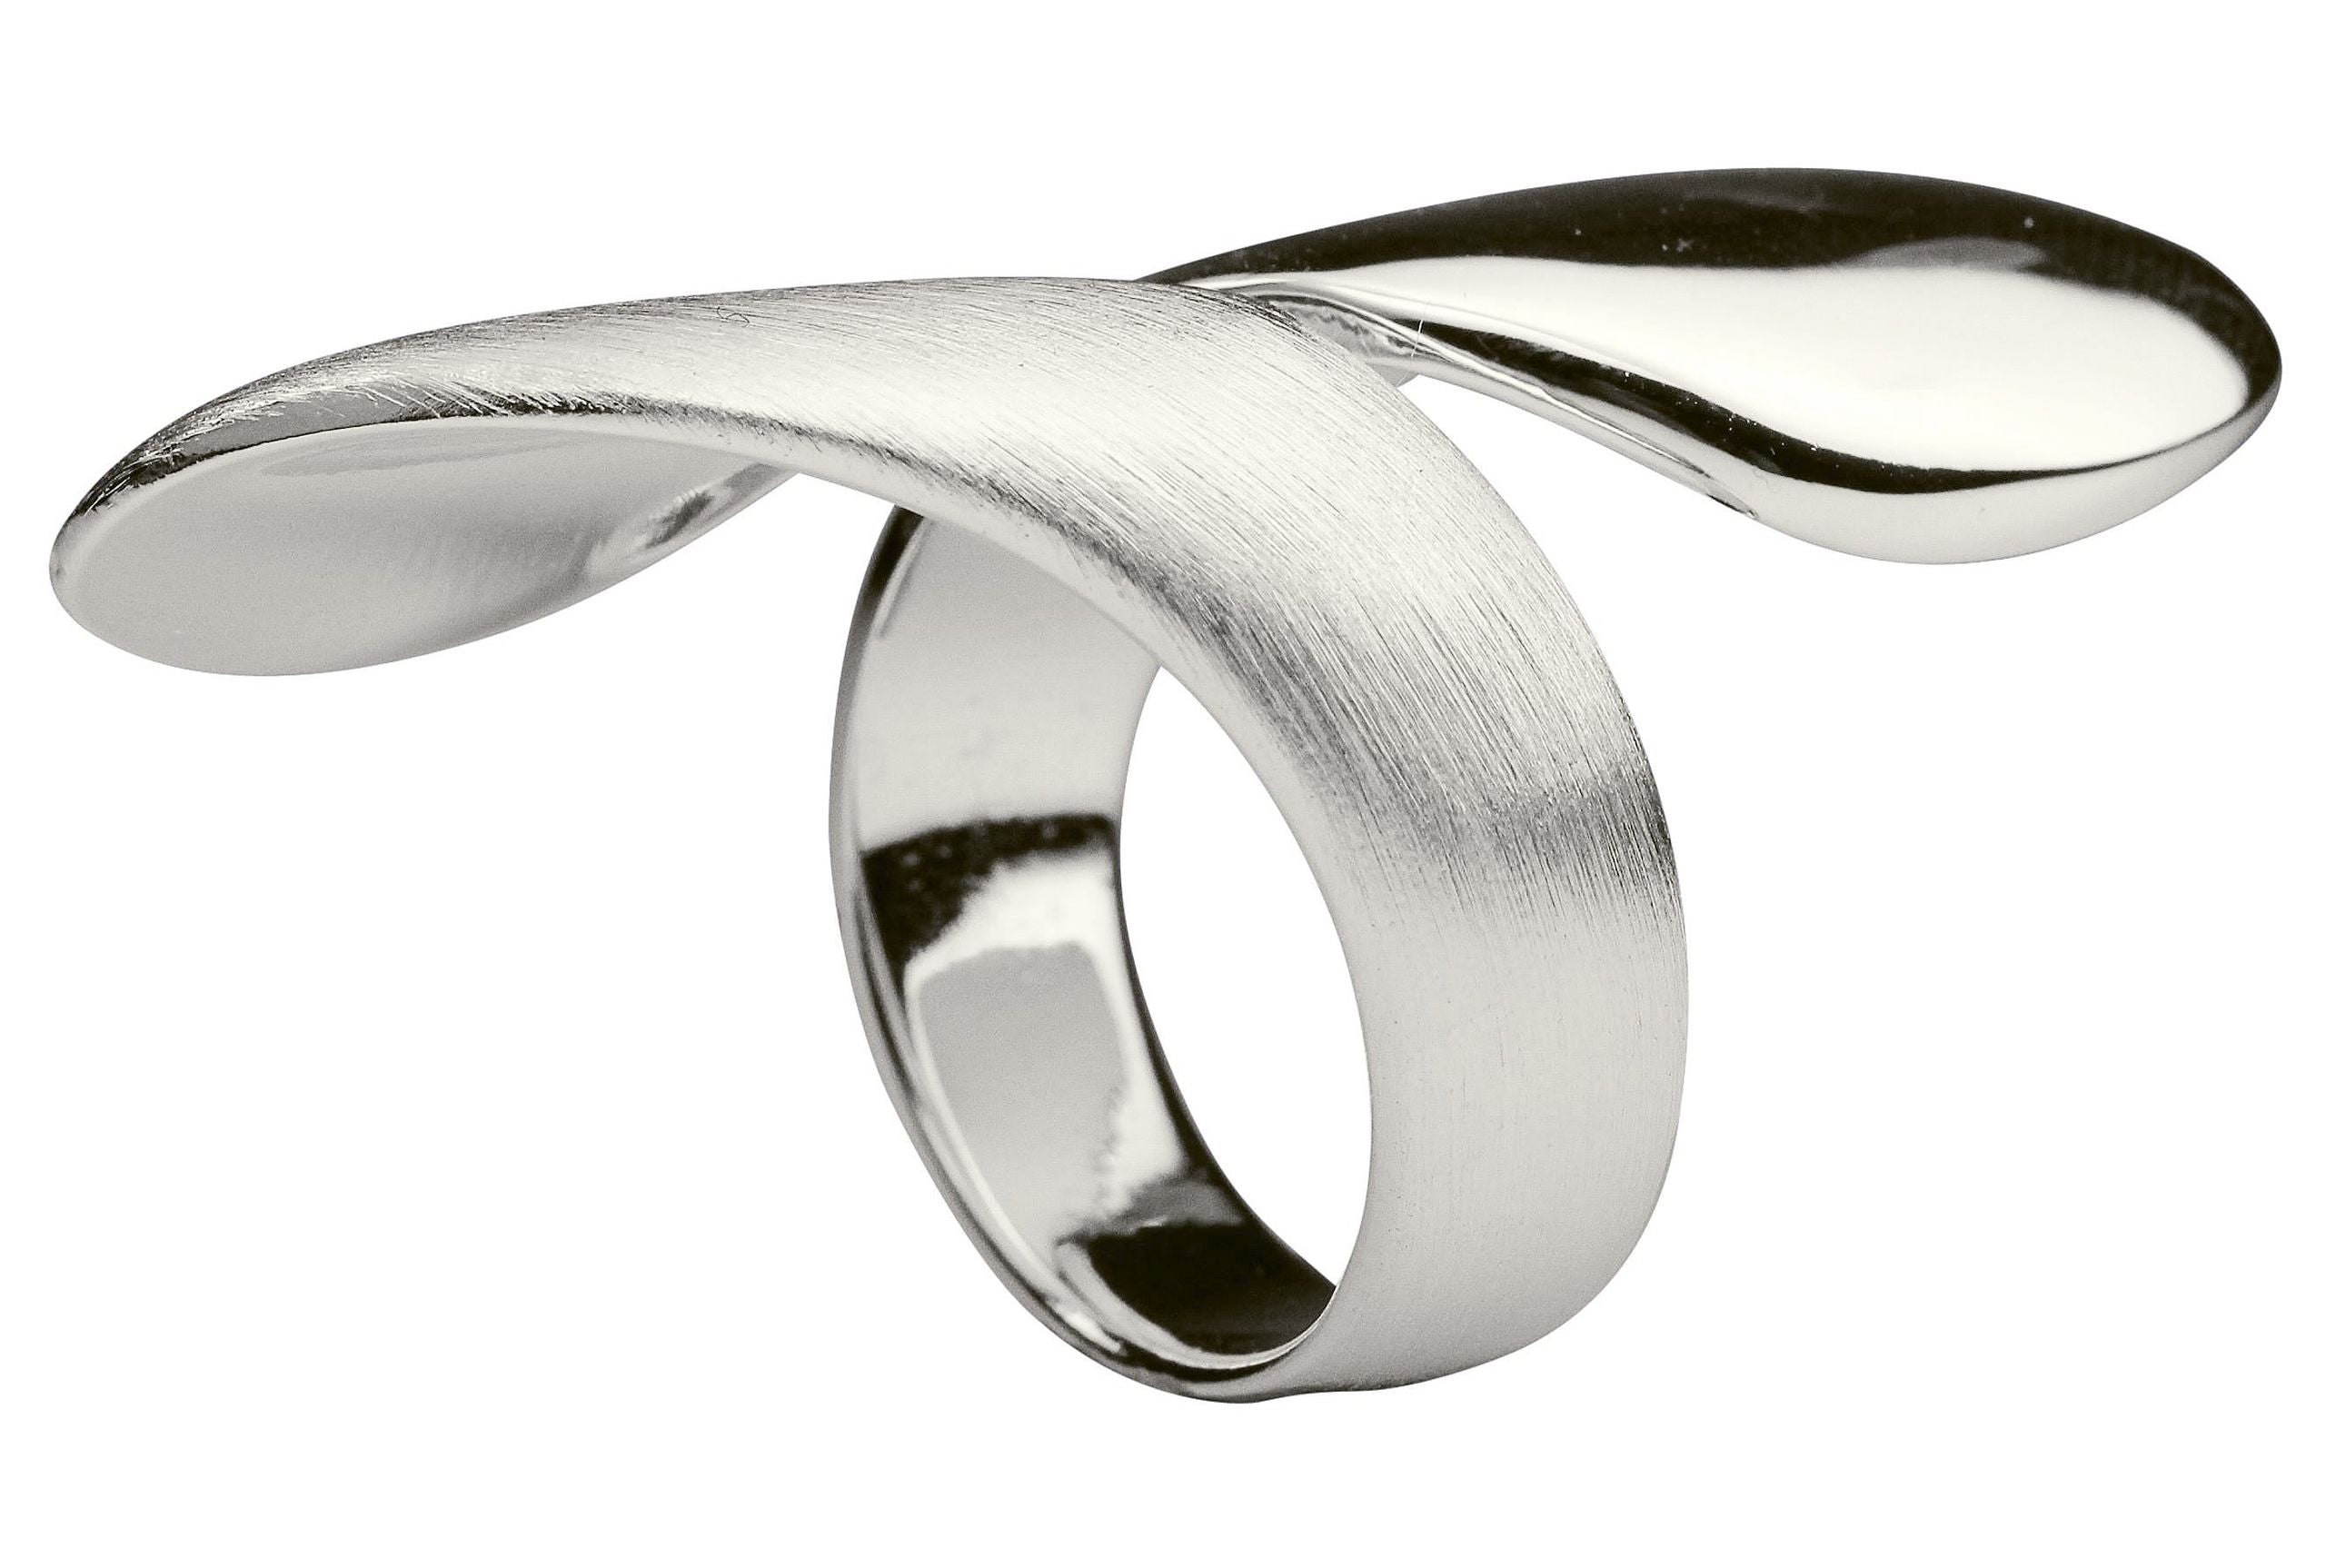 Ein offen gearbeiteter Damenring aus Silber mit teils matter, teils glänzender Oberfläche, der mit seiner Form eine Umarmung um den Finger andeutet.